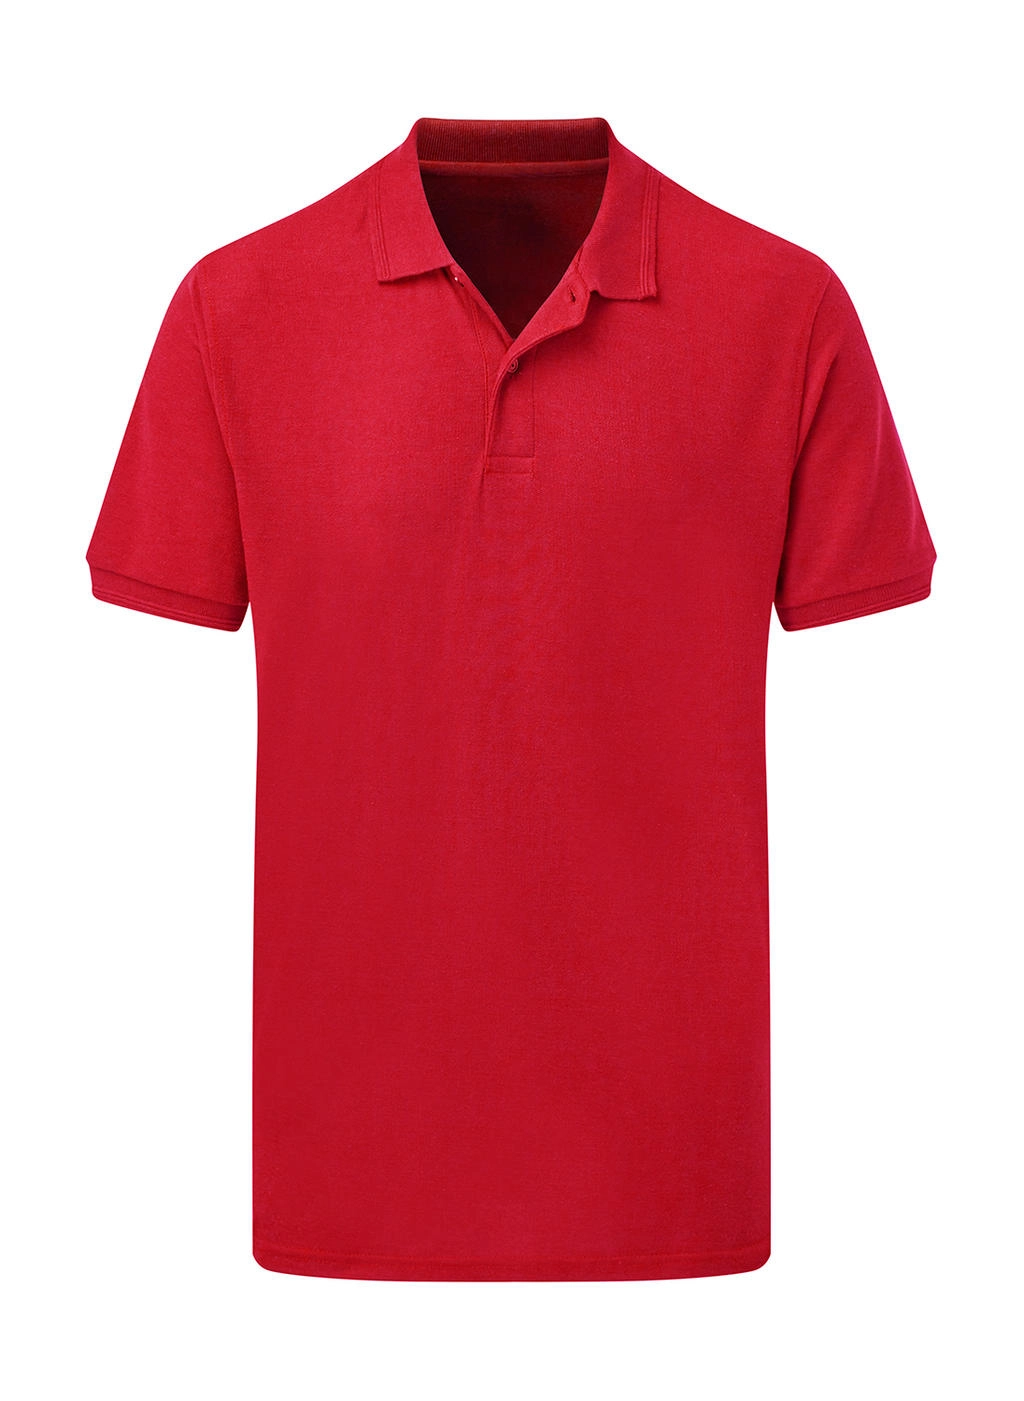 Poly Cotton Polo Men zum Besticken und Bedrucken in der Farbe Red mit Ihren Logo, Schriftzug oder Motiv.